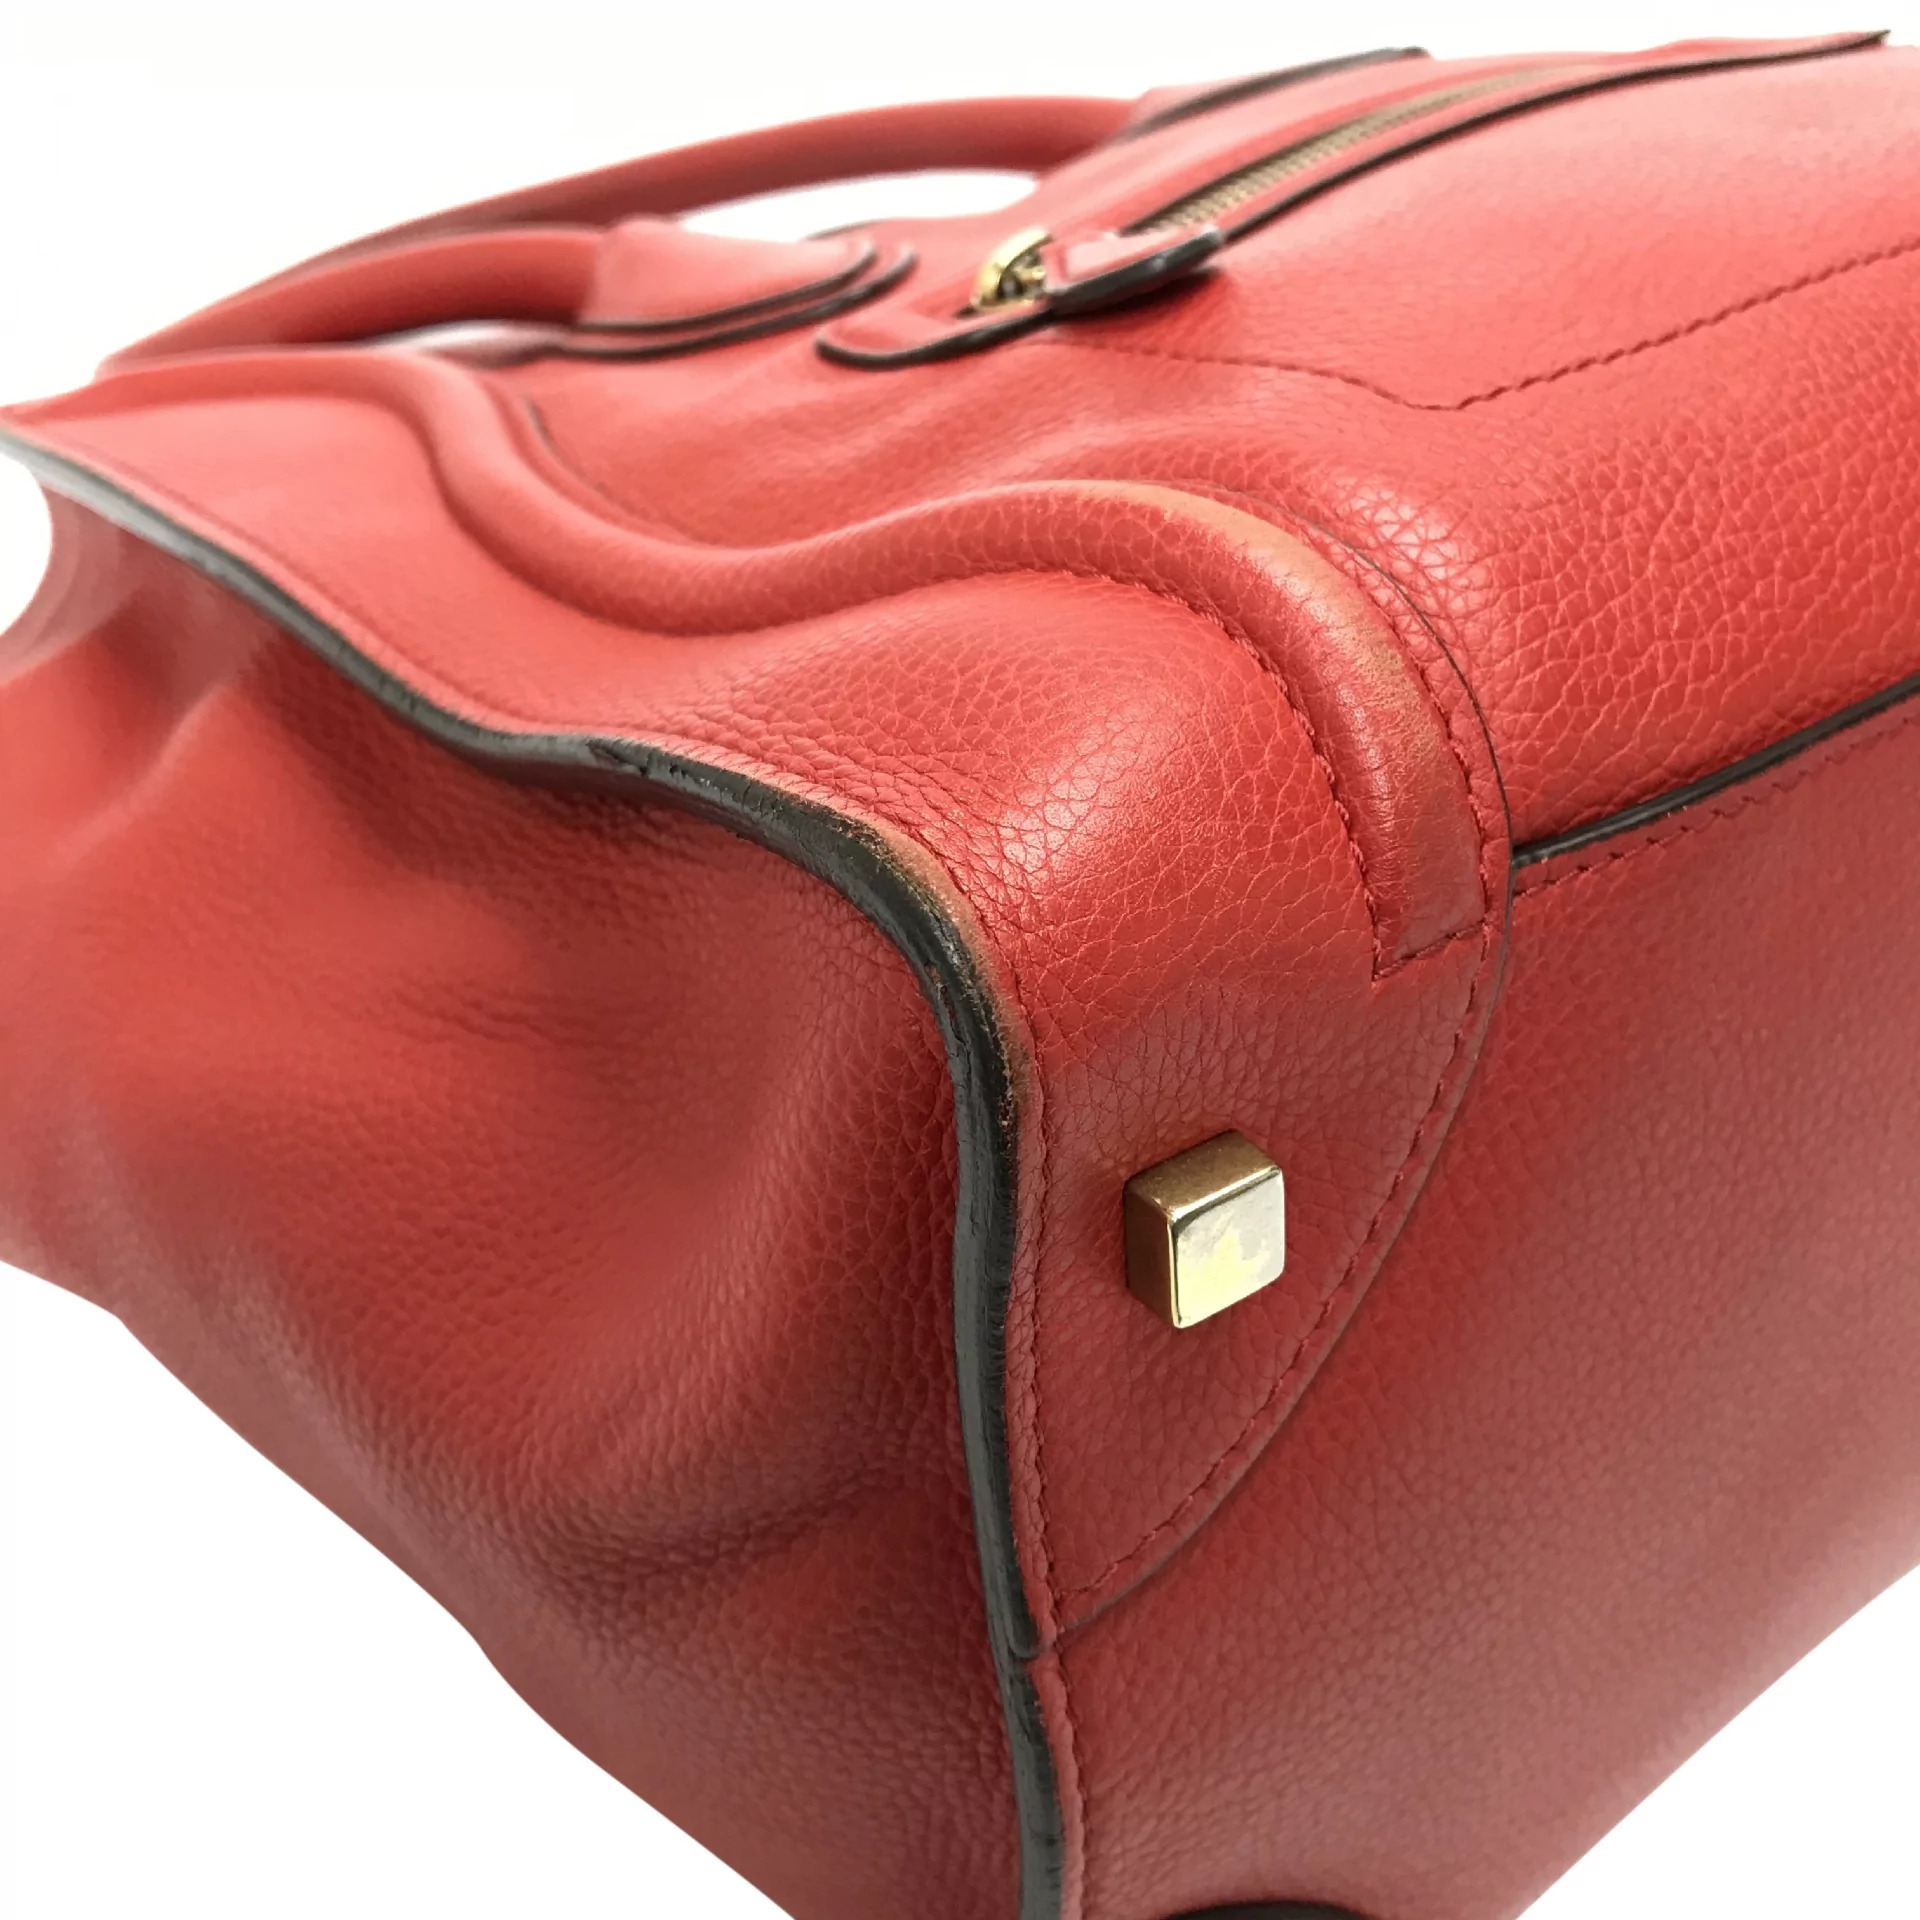 Bolsa Céline Luggage Vermelha